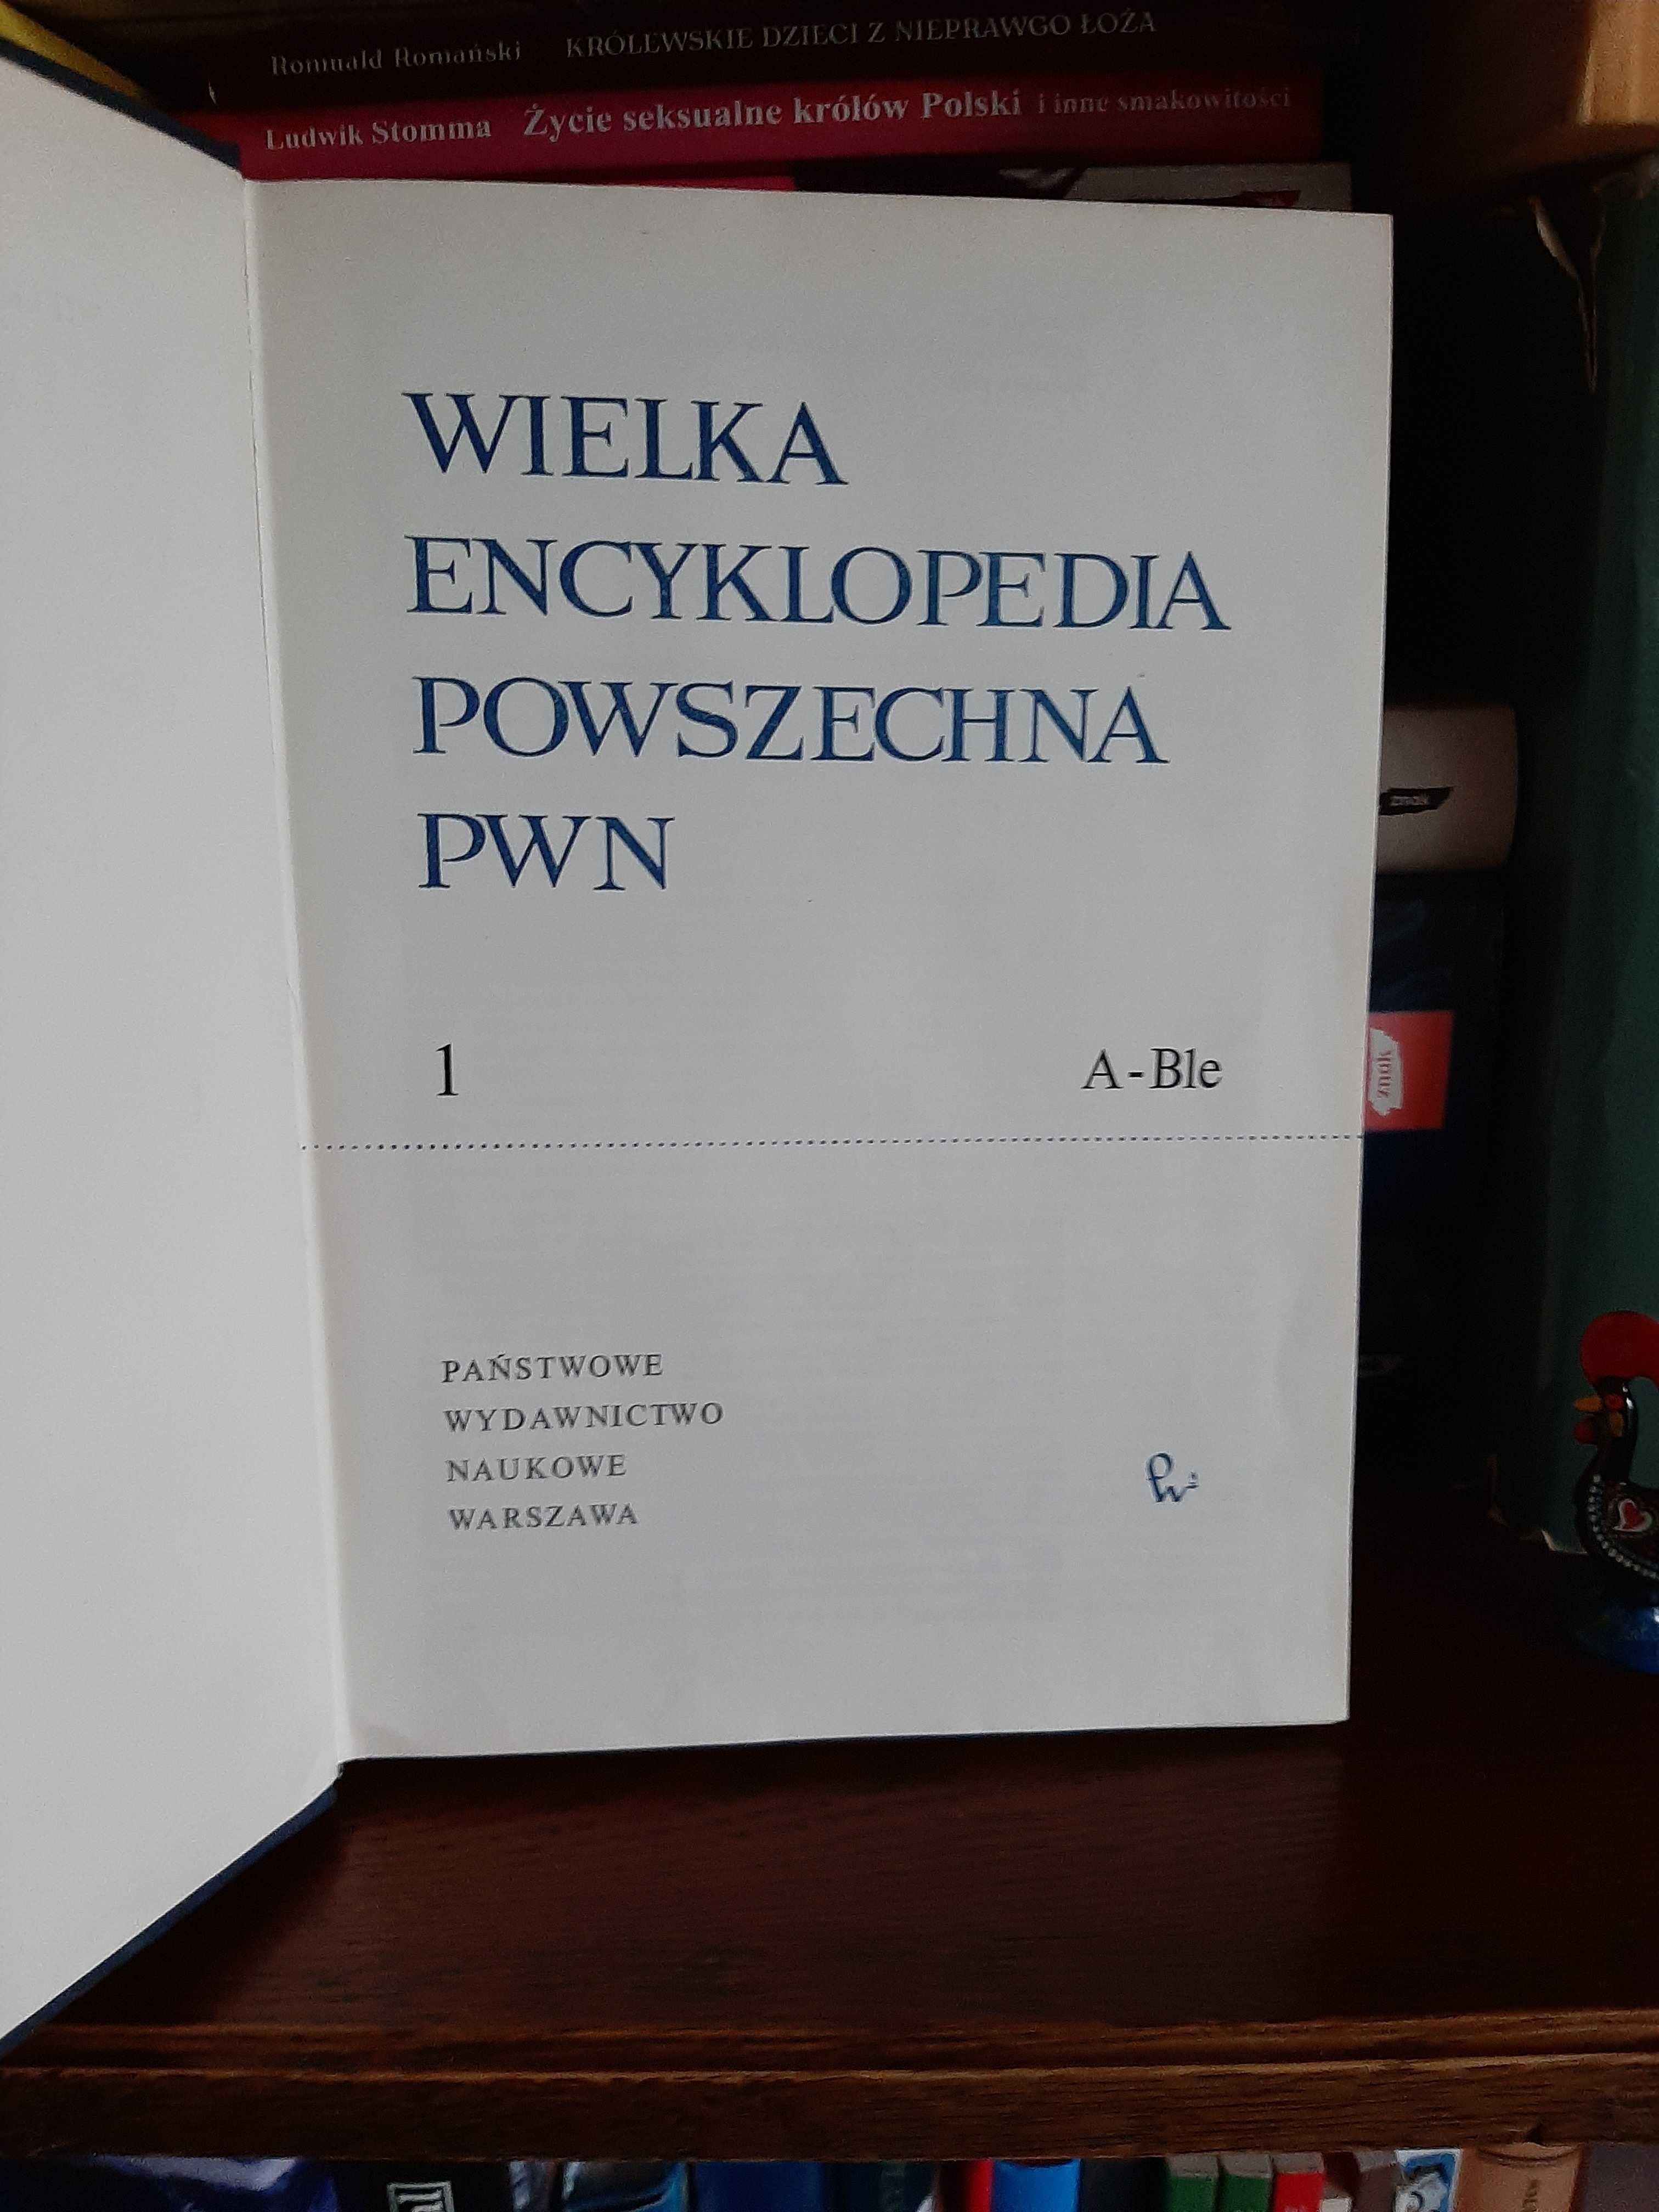 Wielka Encyklopedia powszechna PWN 13 tomów kolekcjonerska